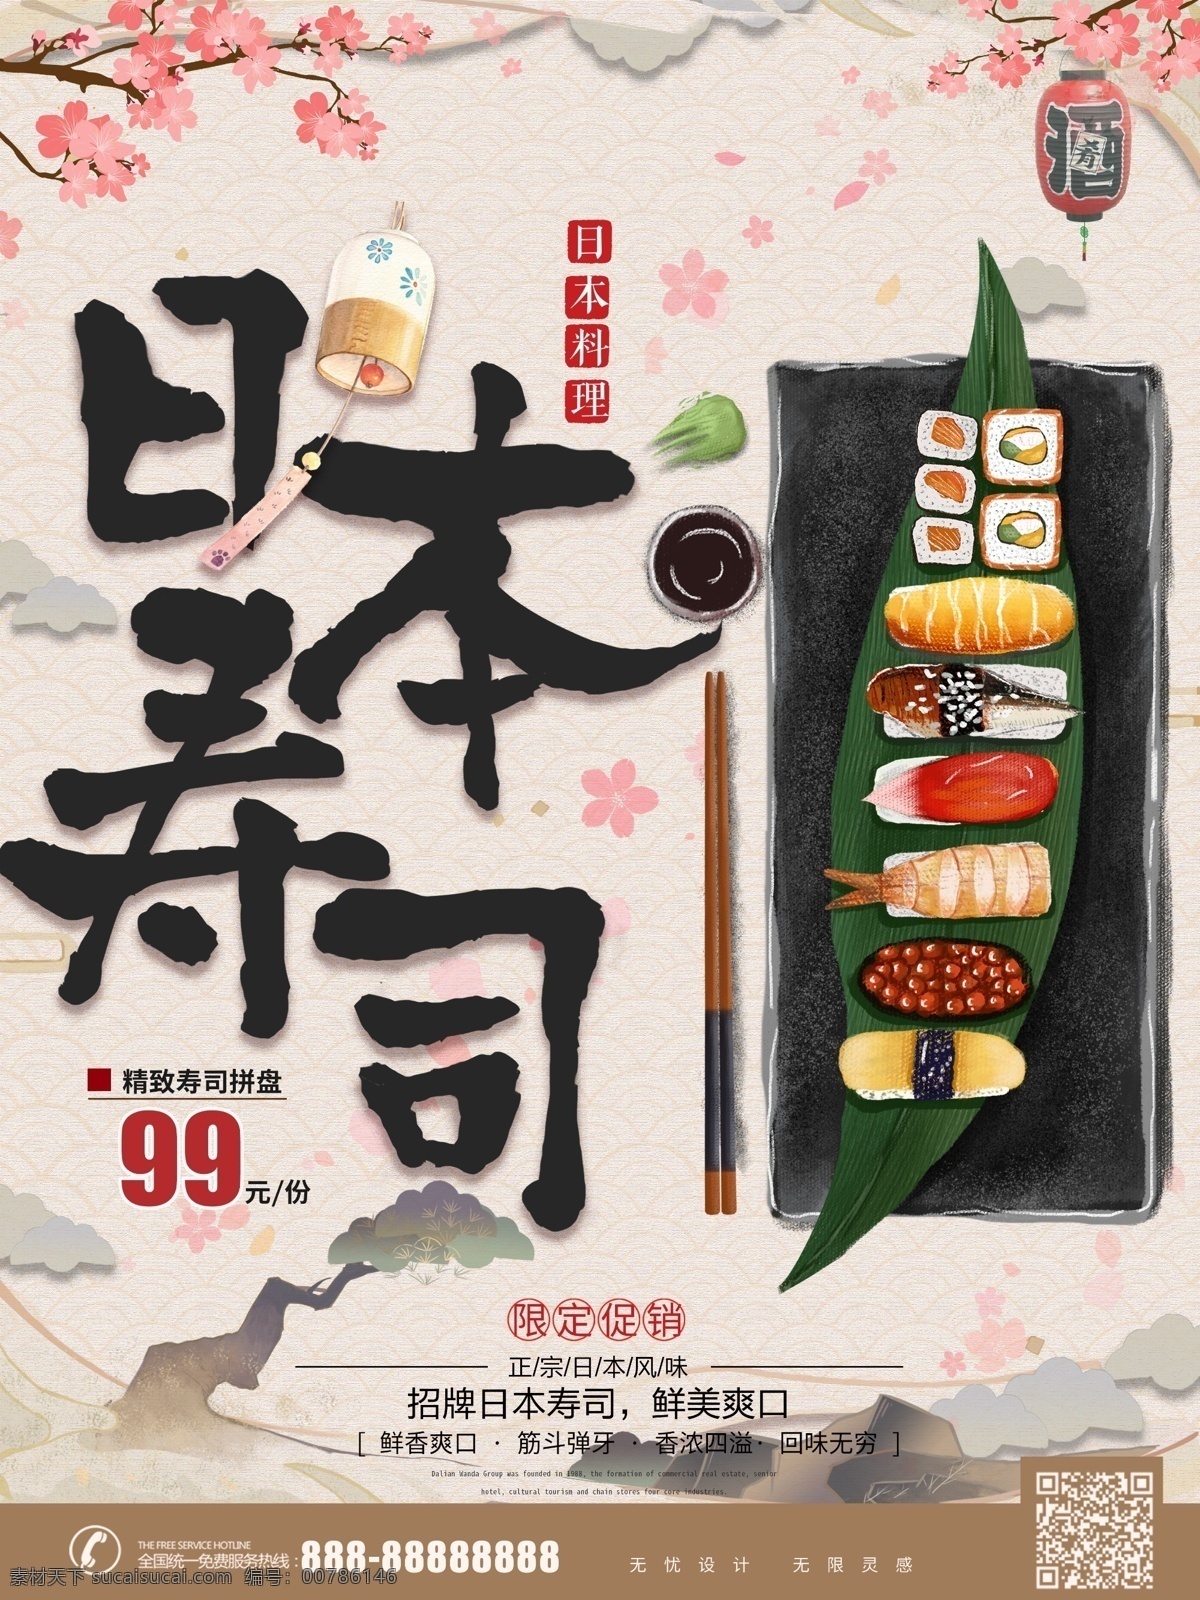 手绘 复古 风格 日本 寿司 美食 促销 海报 樱花 浪漫 复古风 日本料理 日式 活动宣传